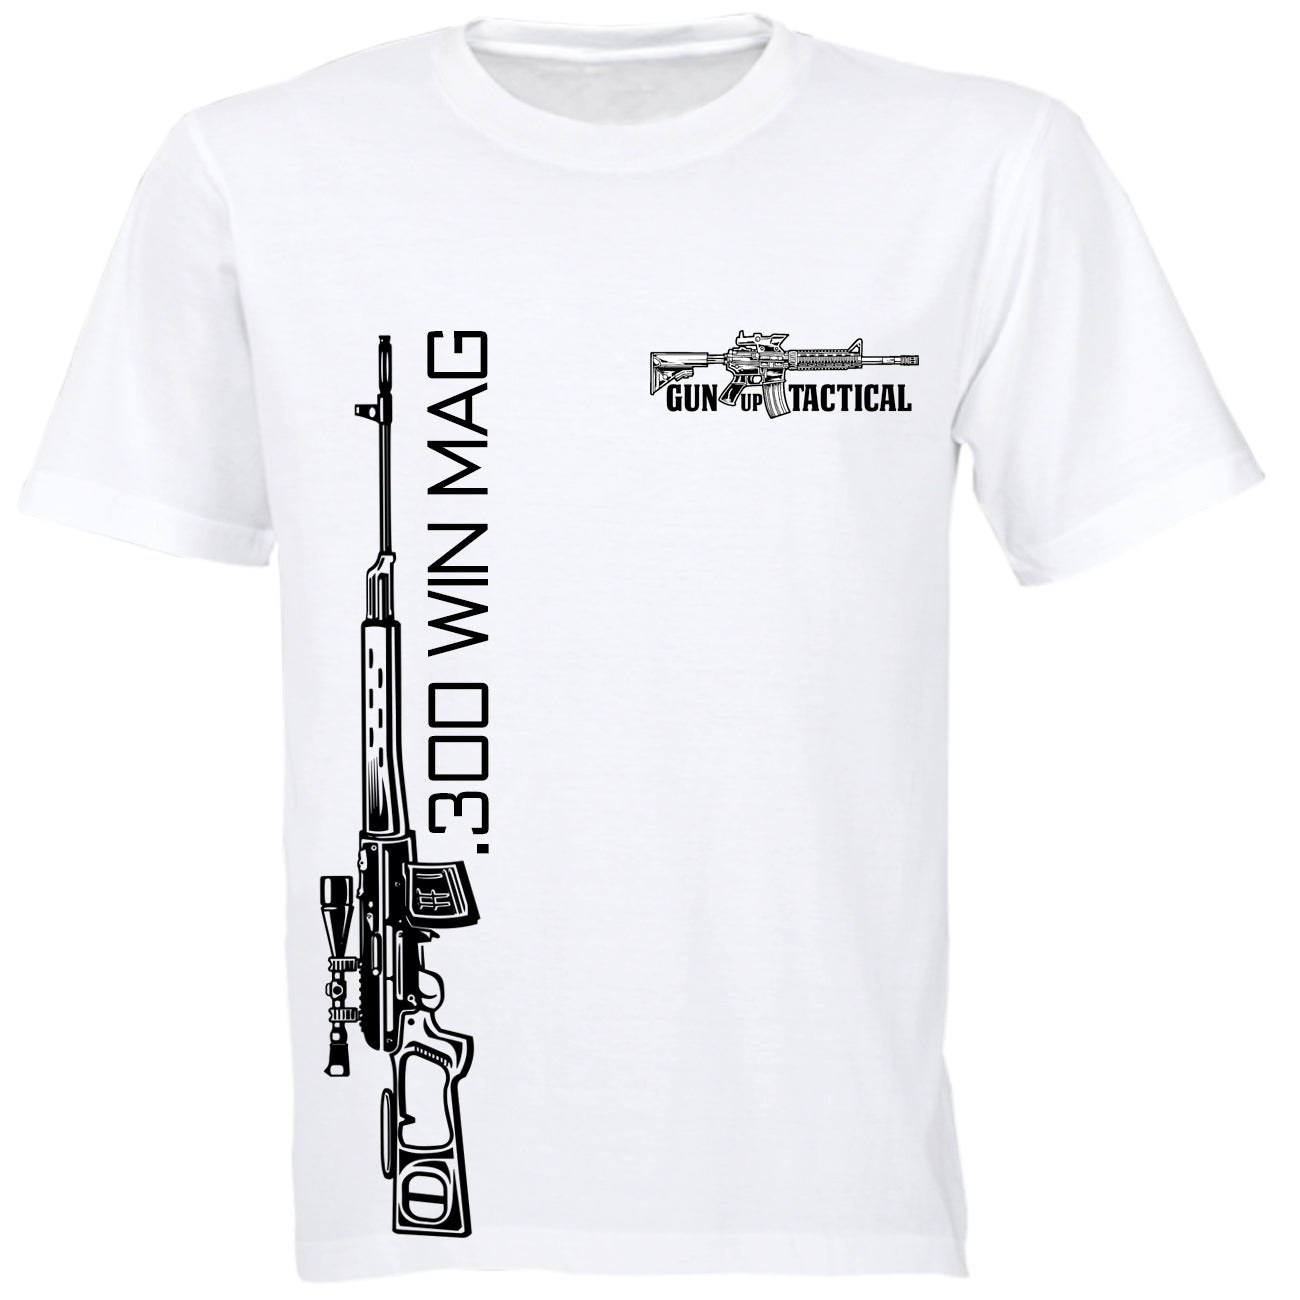 300 Win Mag T-Shirt - Gun Up Tactical